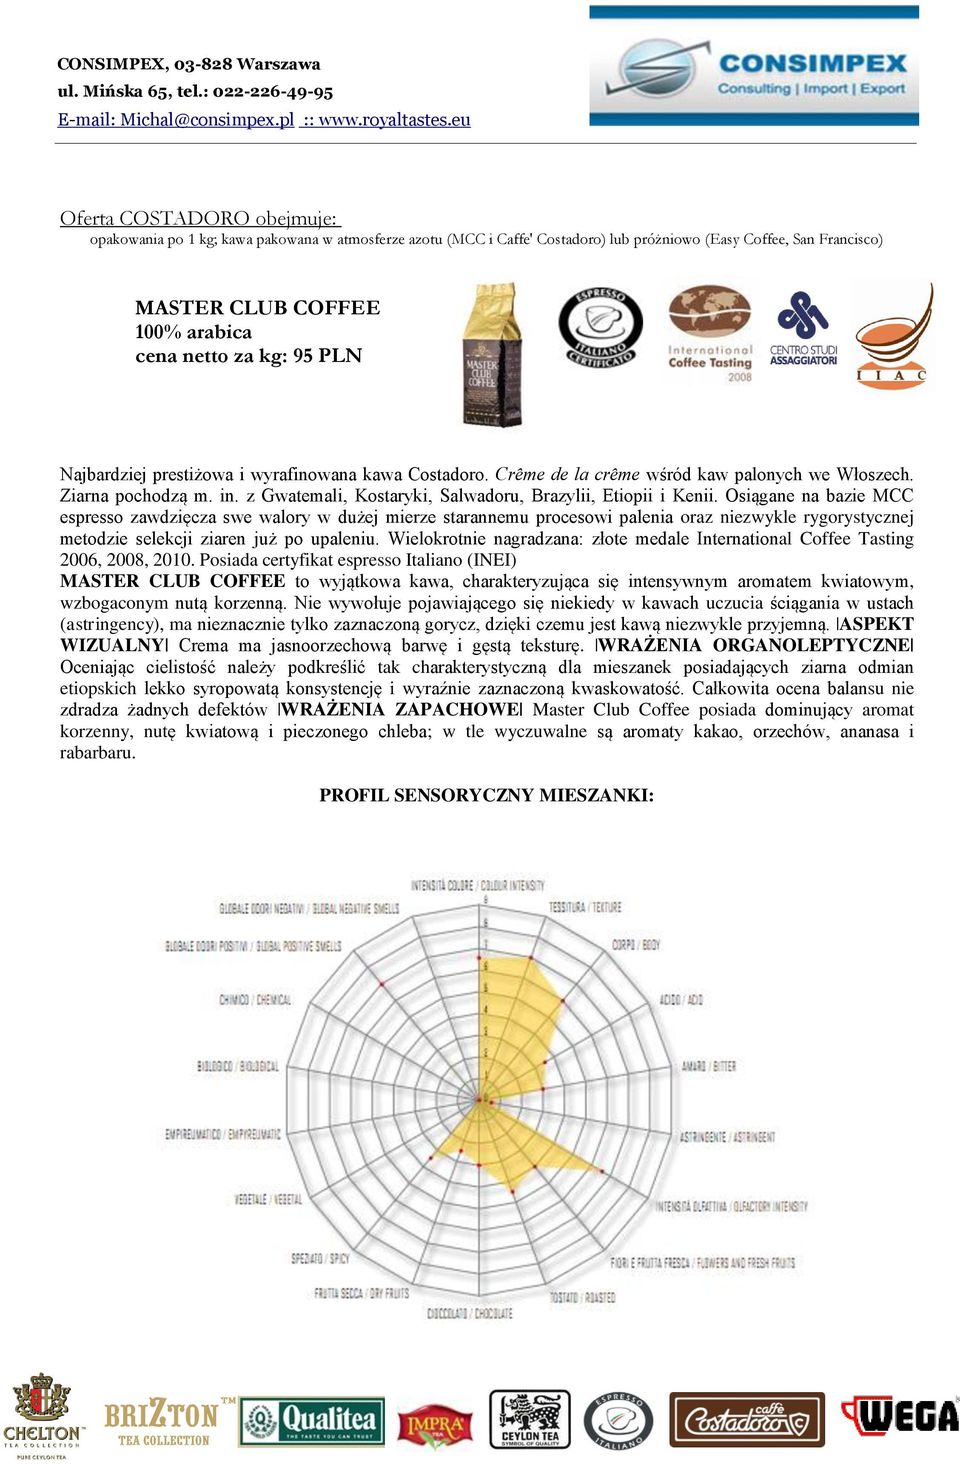 Osiągane na bazie MCC espresso zawdzięcza swe walory w dużej mierze starannemu procesowi palenia oraz niezwykle rygorystycznej metodzie selekcji ziaren już po upaleniu.